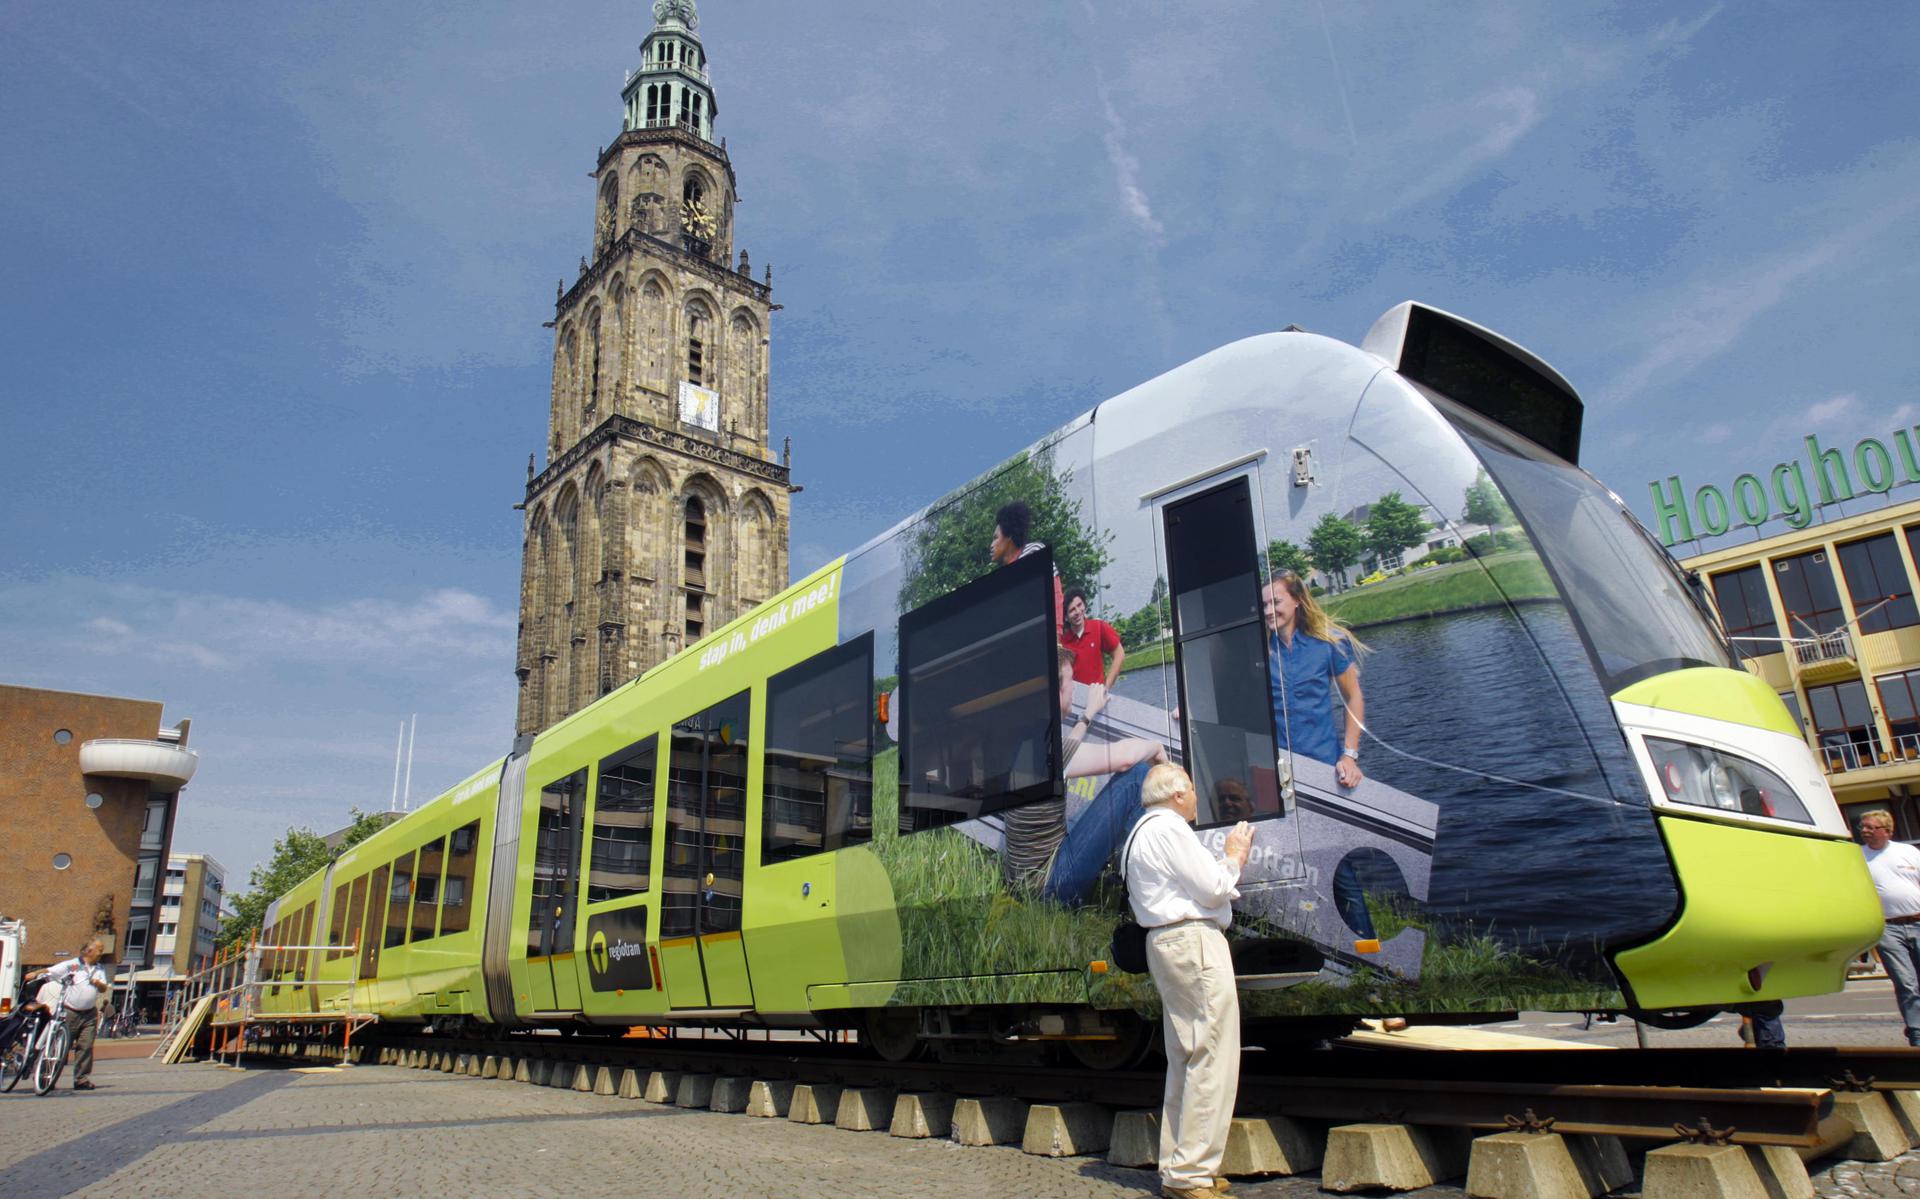 Op de Grote Markt in Groningen werd tien jaar geleden een tram van de Haagse Tram Maatschappij neergezet om de plannen van destijds aan de bevolking te tonen. Foto: Archief DvhN